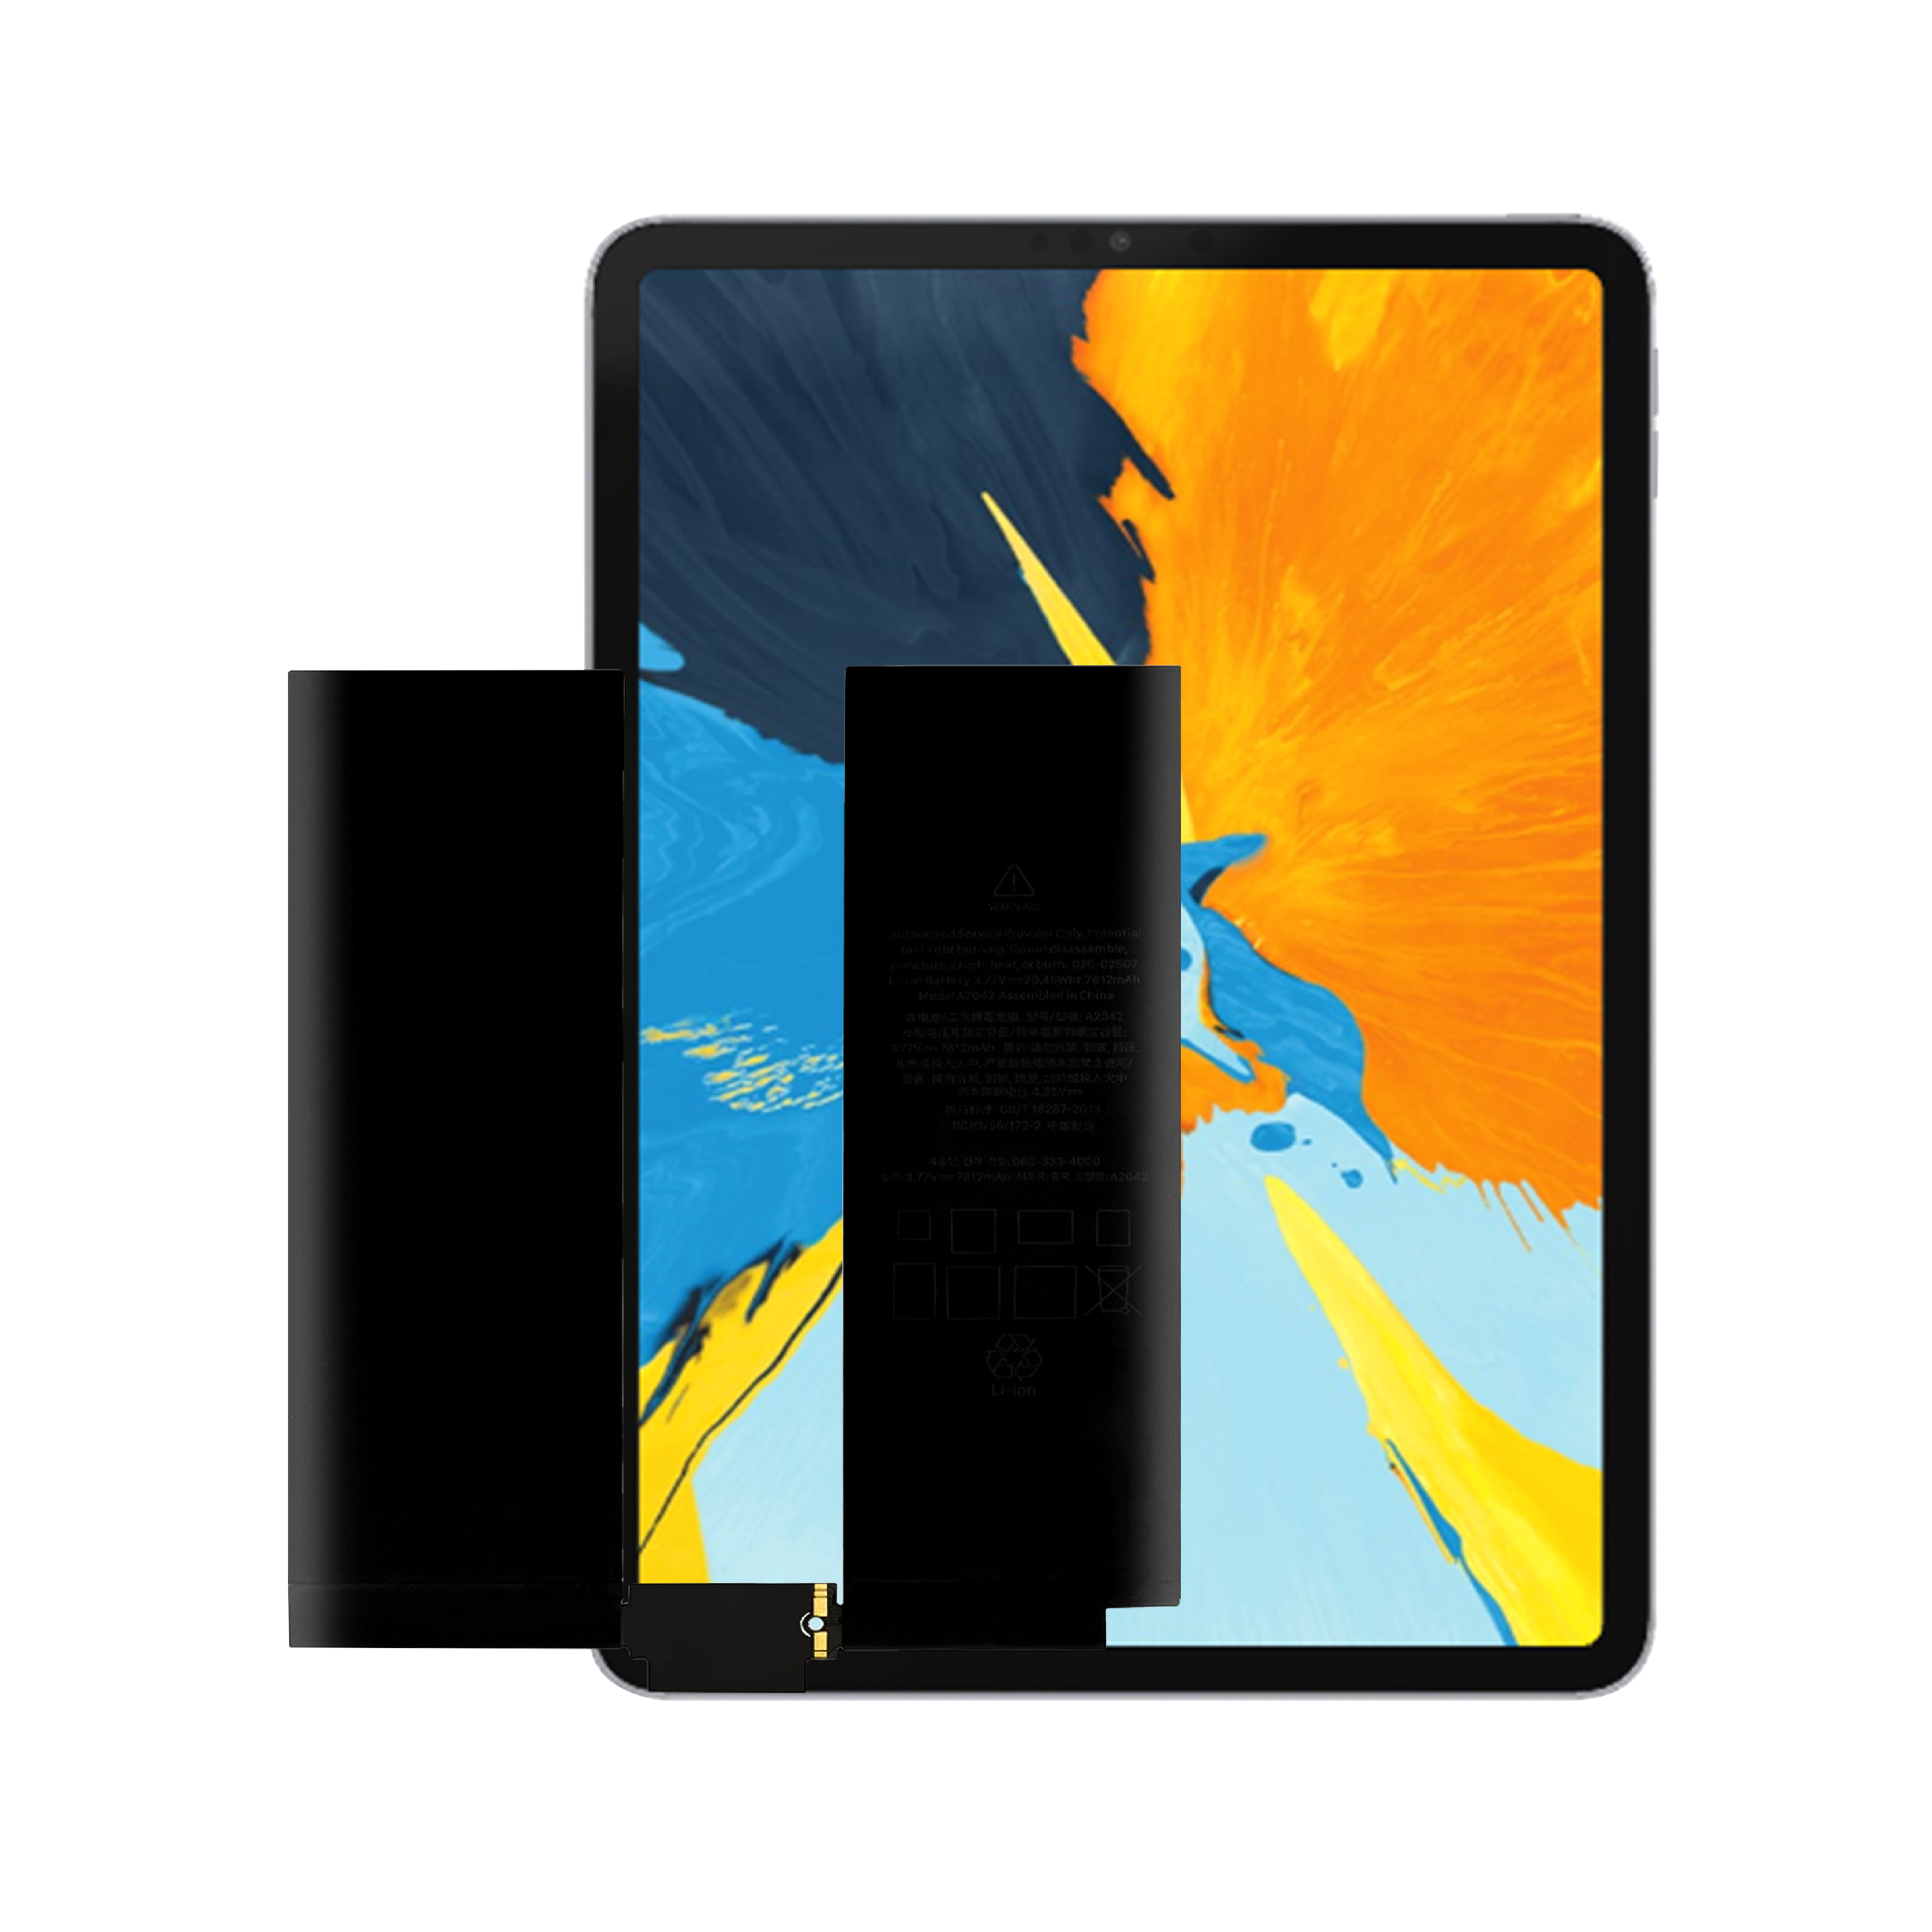 Héich Qualitéit OEM Brand New 0 Zyklus Intern Tablet Batterie Fir Apple iPad Pro 11 1st Gen Batterie